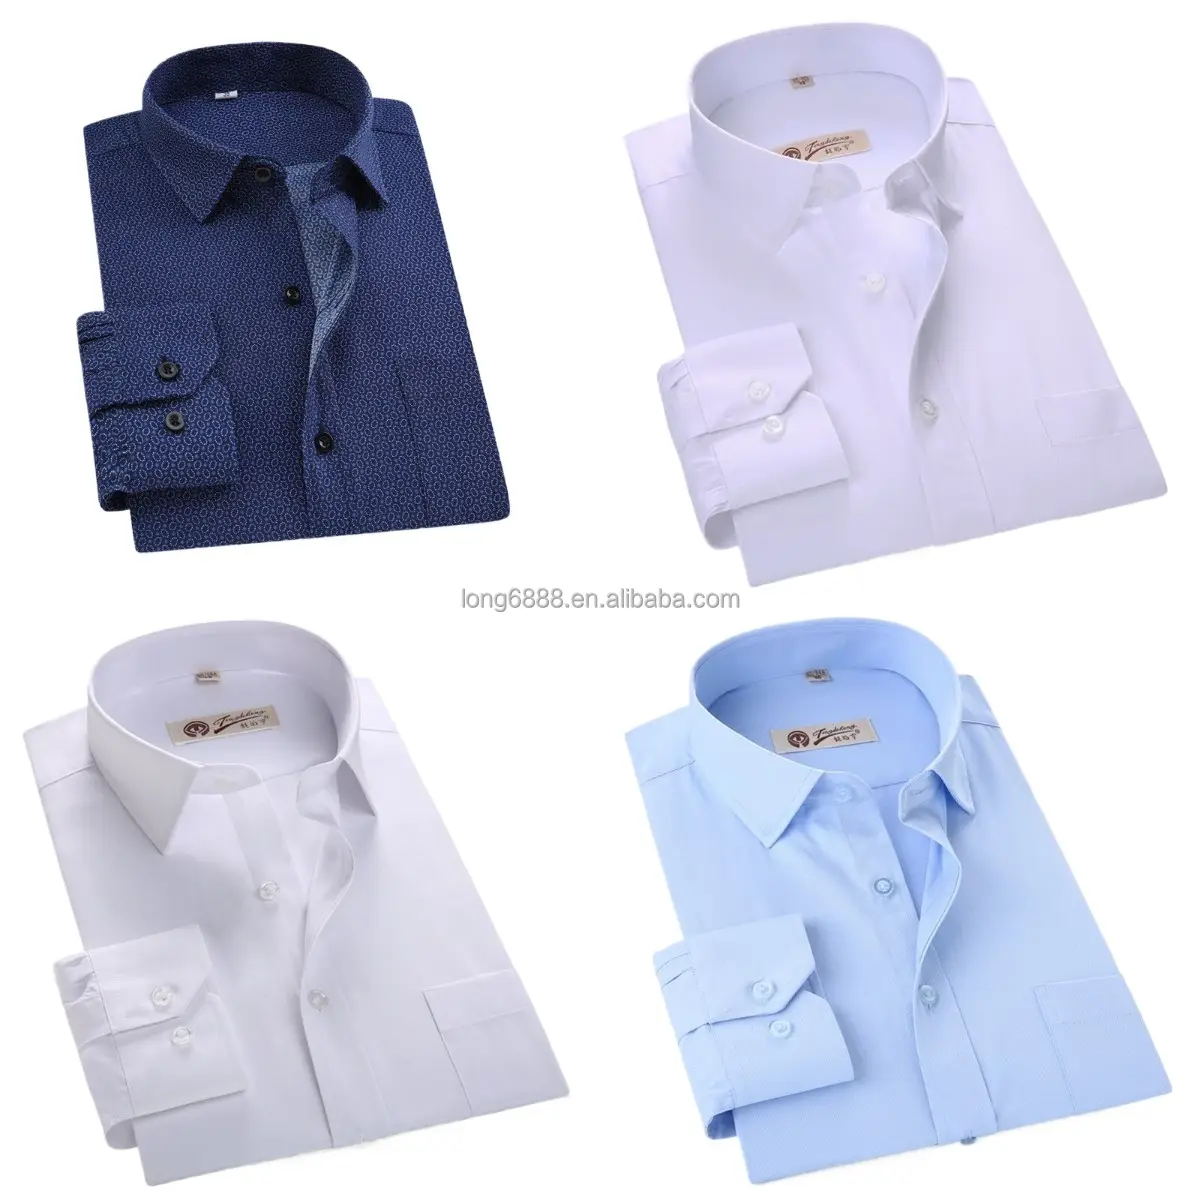 メンズシャツ100% 高品質竹綿白青ストライプビジネスシャツ正式卸売